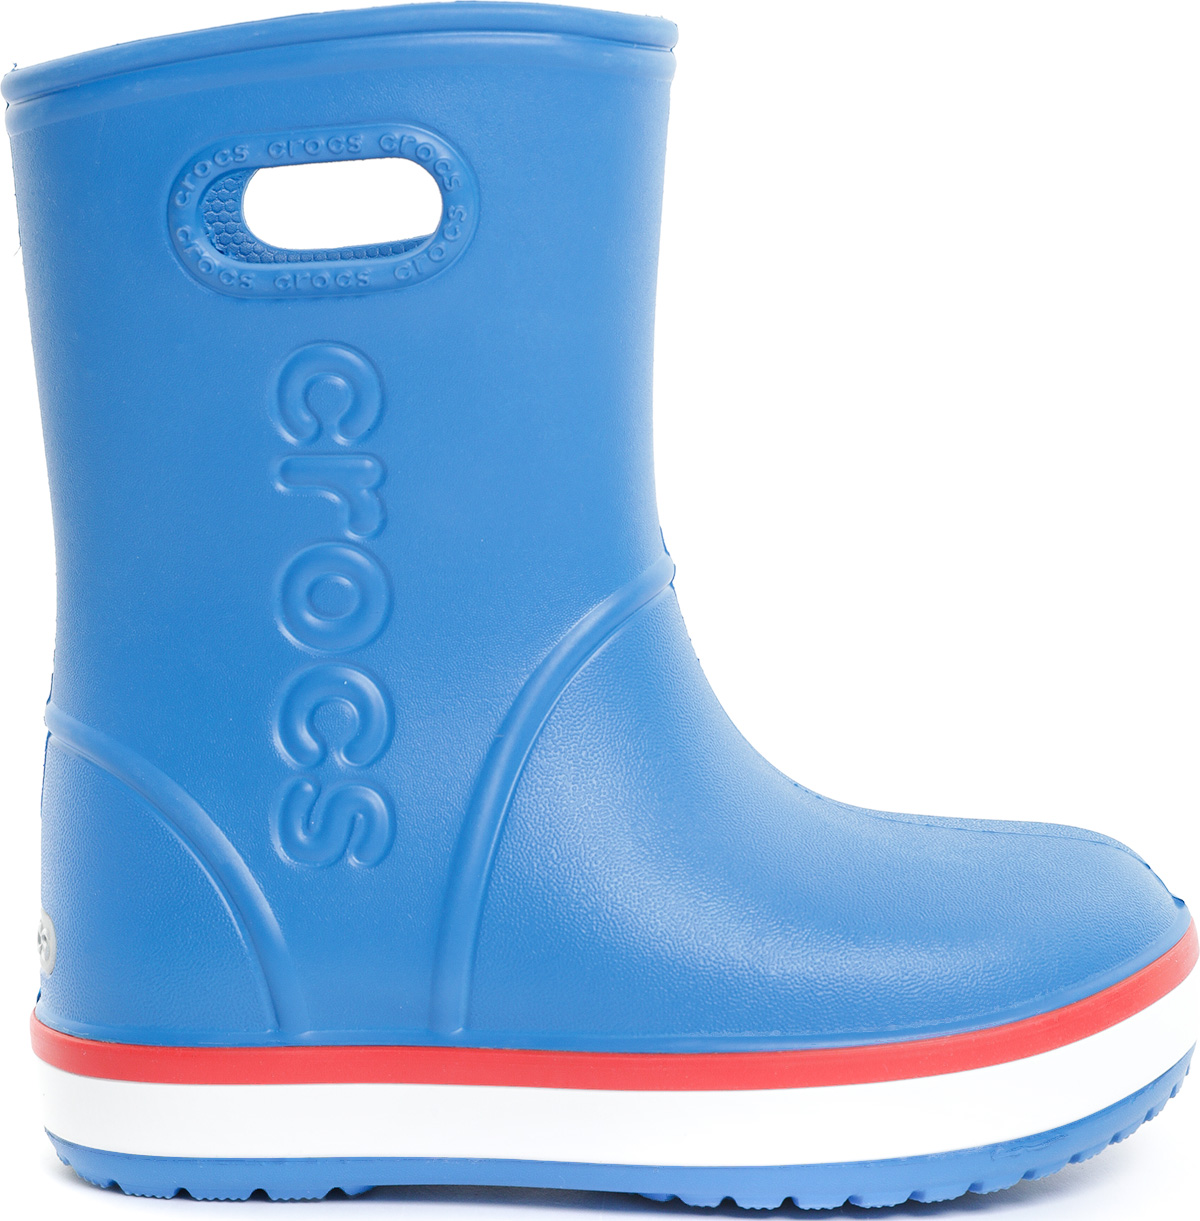 Сапоги резиновые Crocs Crocband Rain Boot Bright Cobalt/Flame